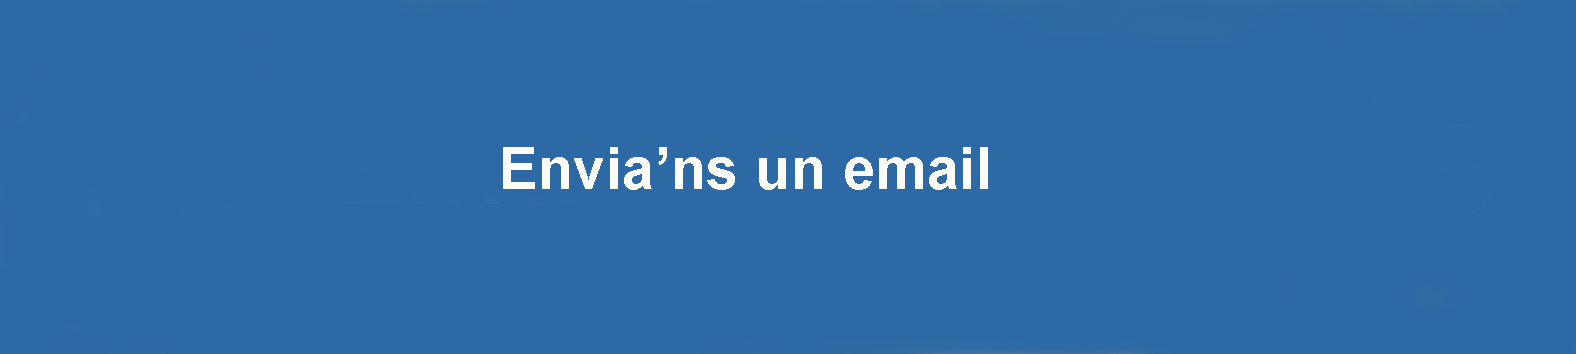 envia email